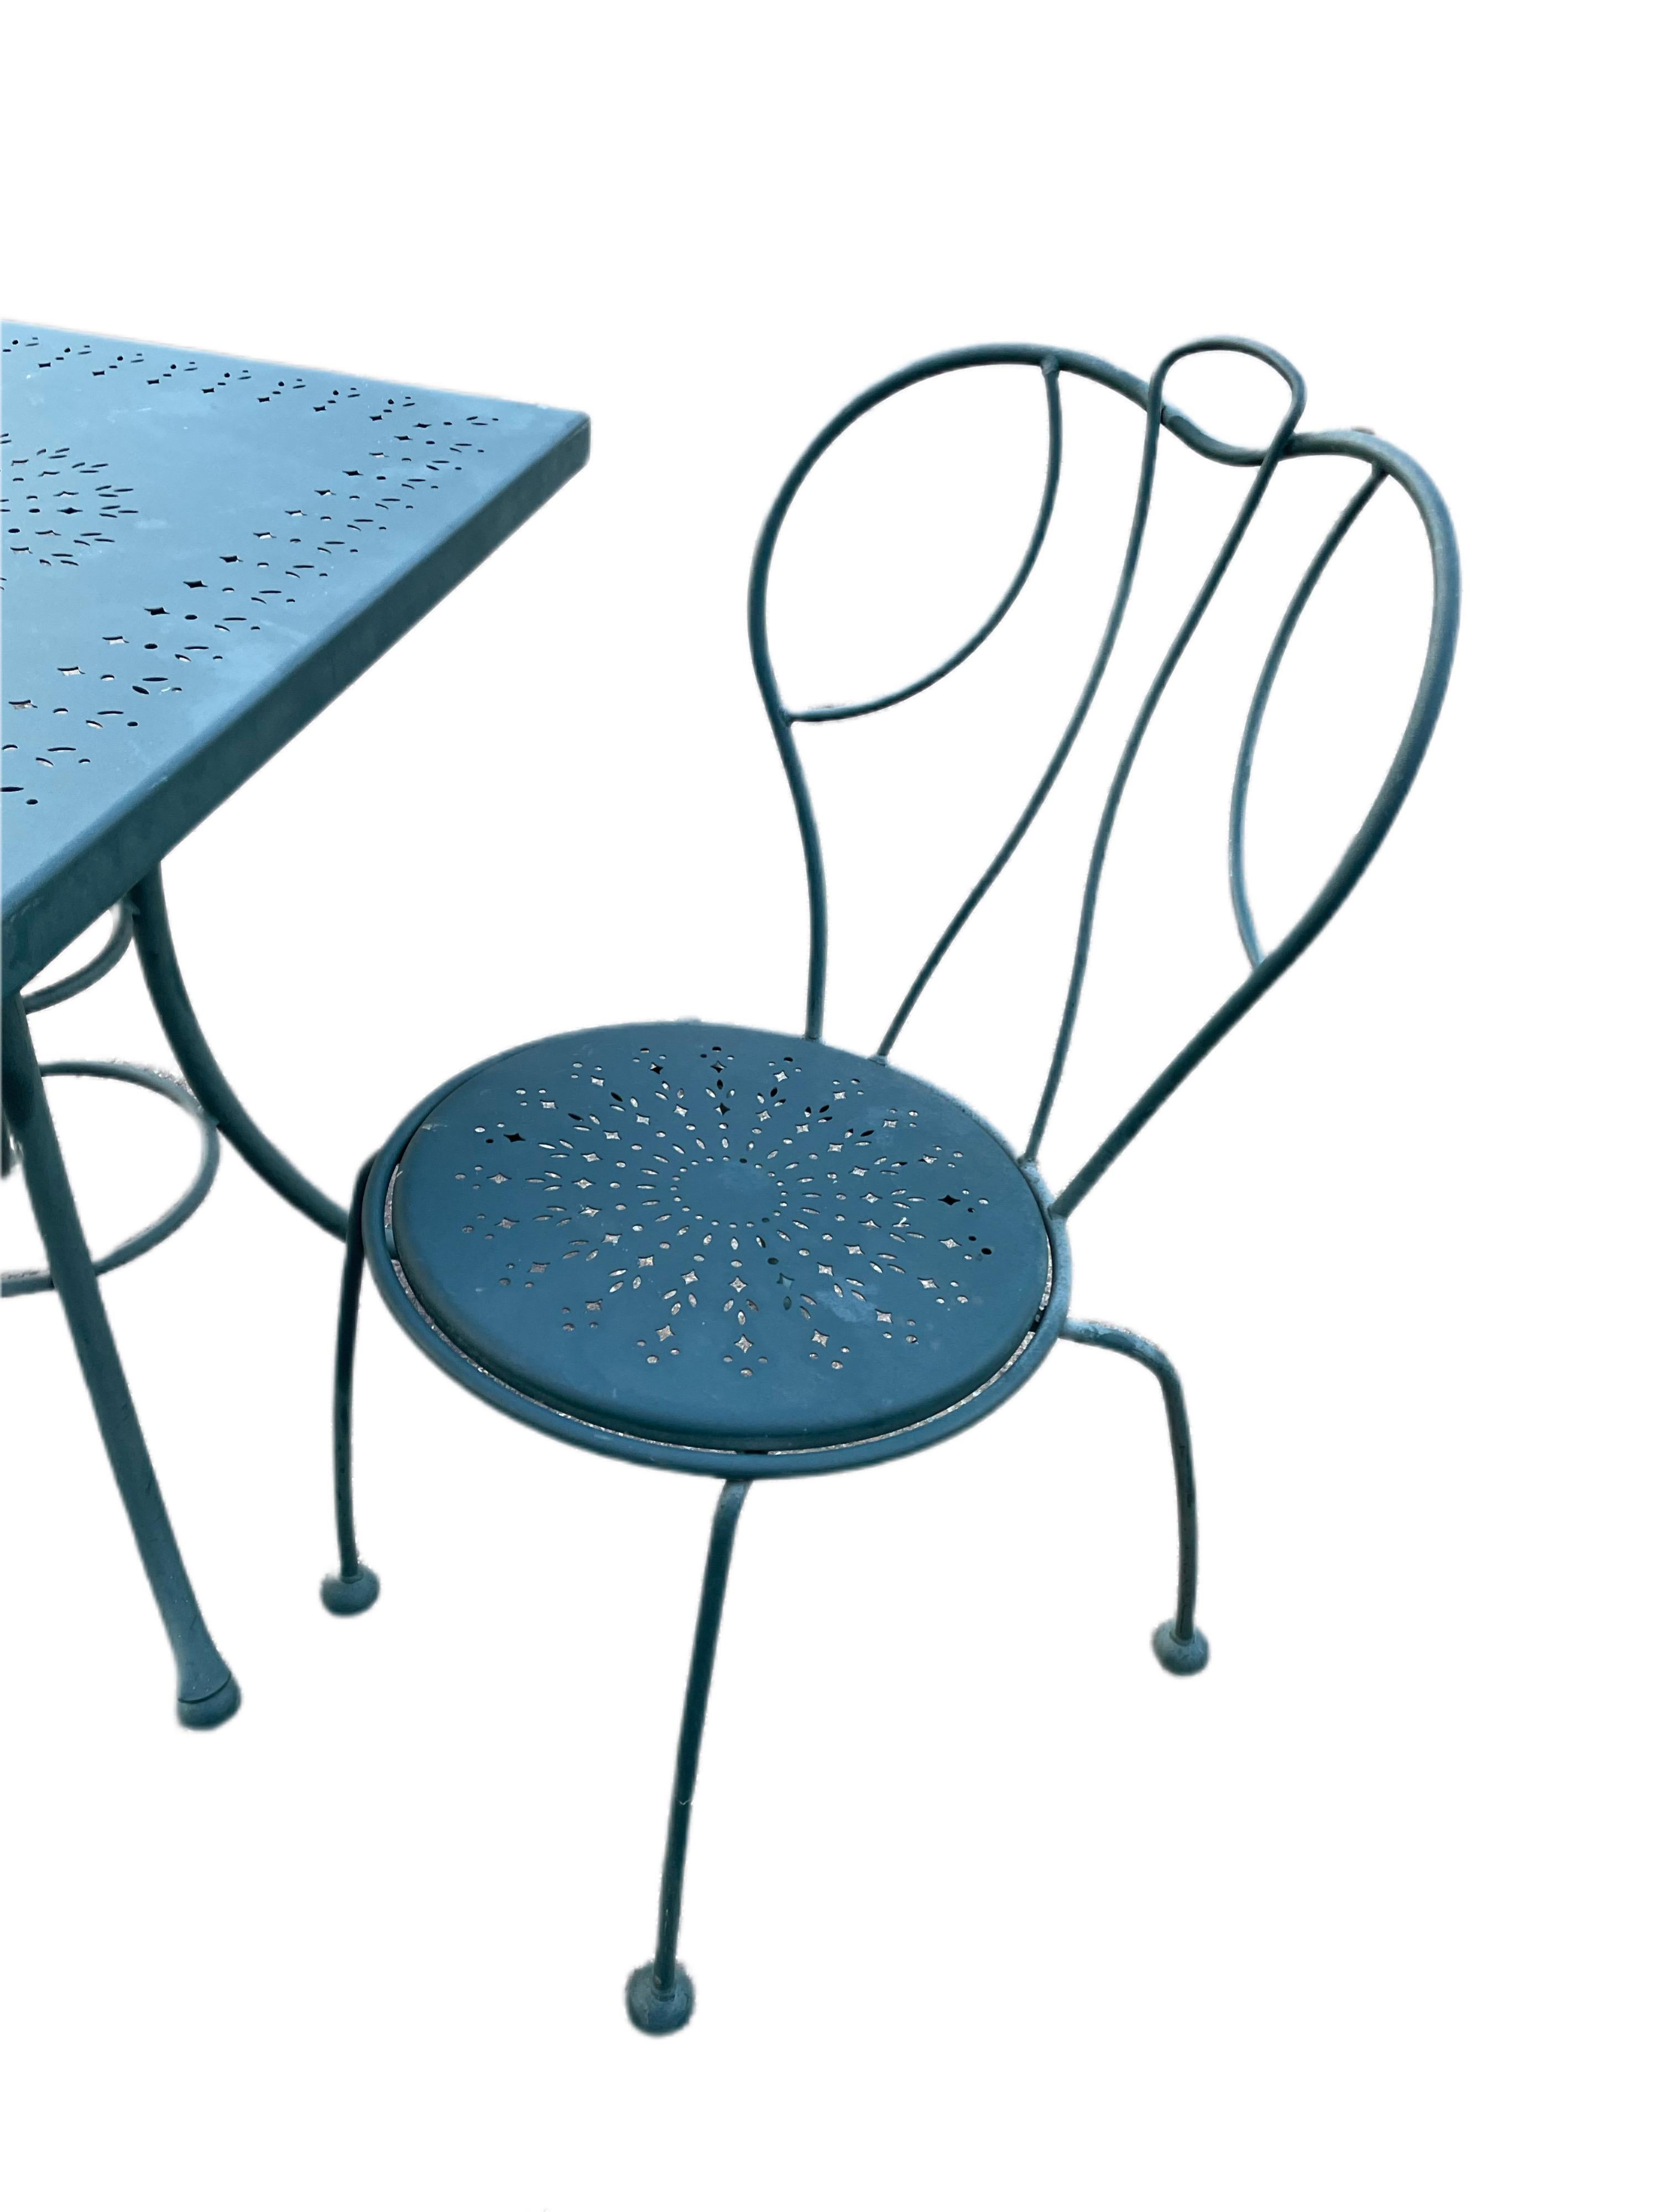 Disponible maintenant pour votre plaisir et prêt à être expédié est un ensemble de café de patio en fer forgé vintage fabriqué par Woodard. 

Cet ensemble de trois pièces en fer forgé, composé d'une paire de chaises et d'une table assortie, est le